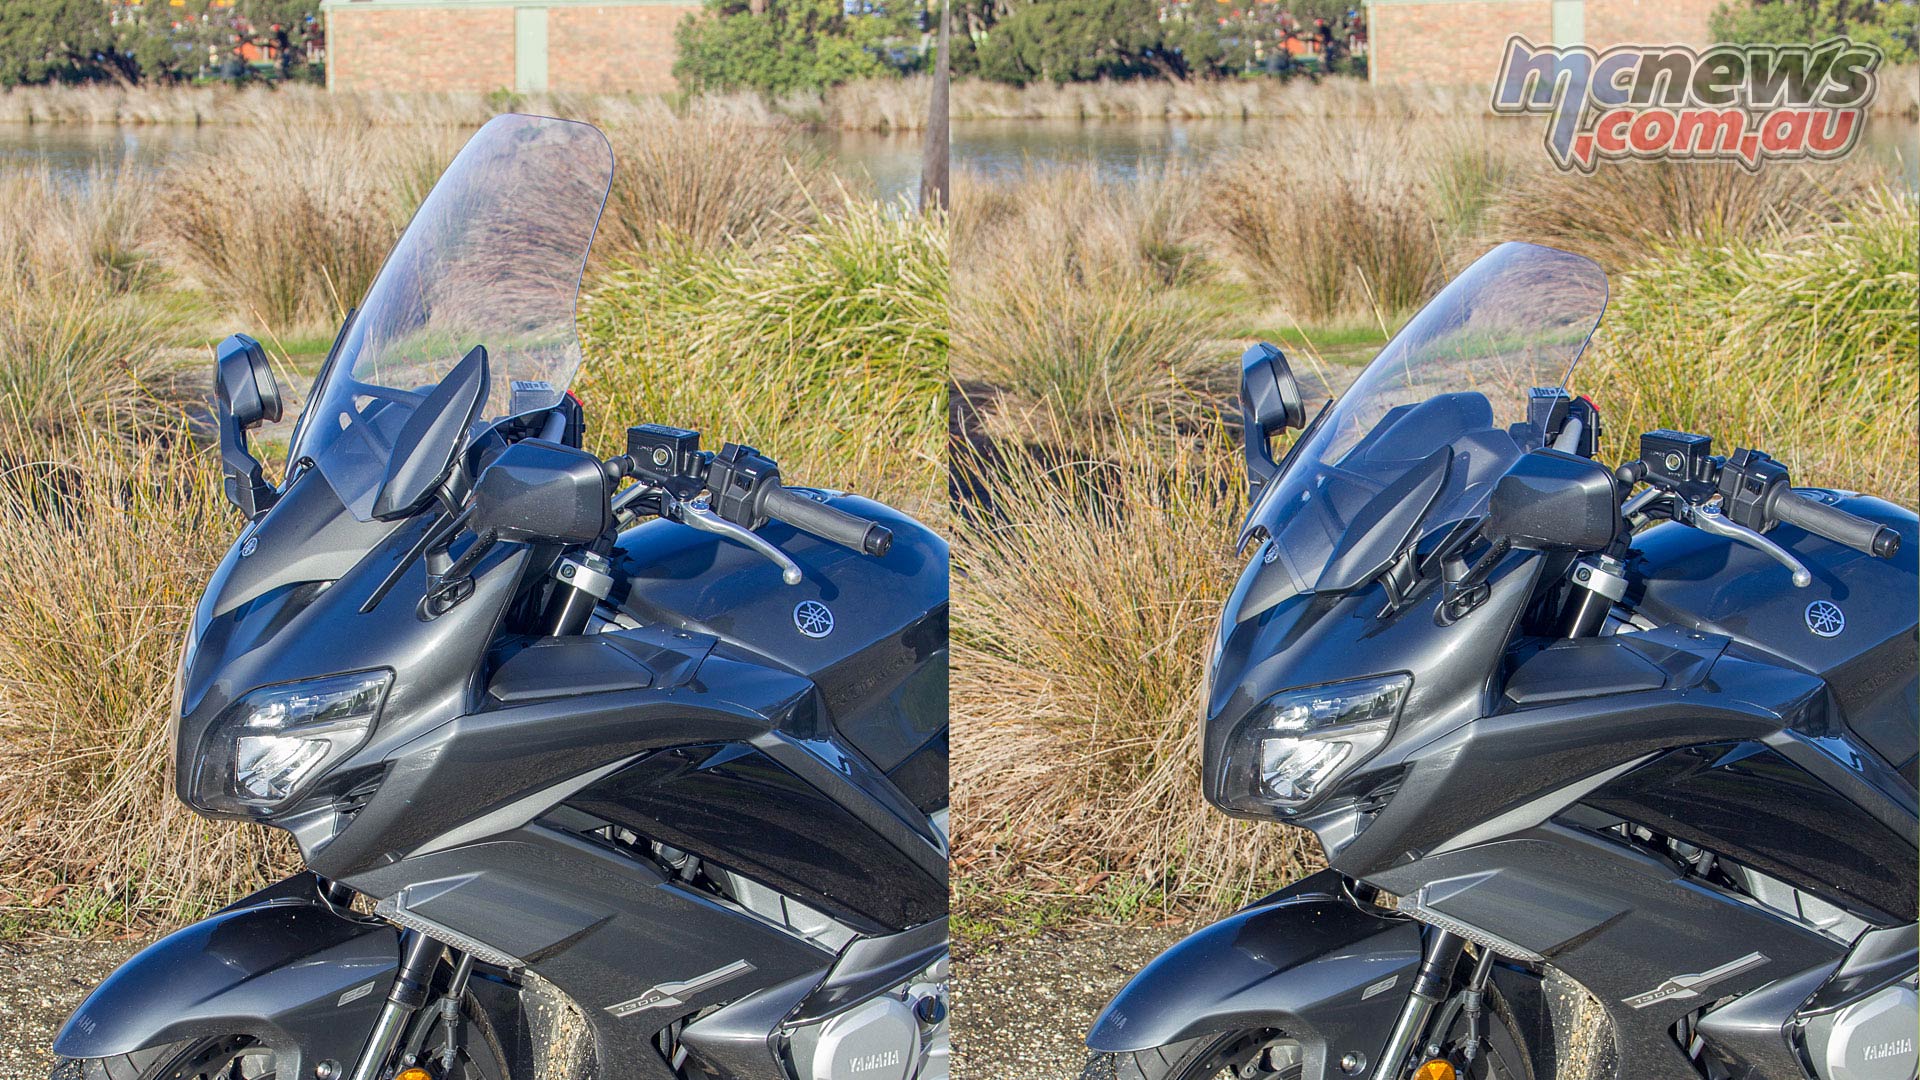 Væsen Monet Broderskab 2019 Yamaha FJR1300 Review | Motorcycle Tests | MCNews